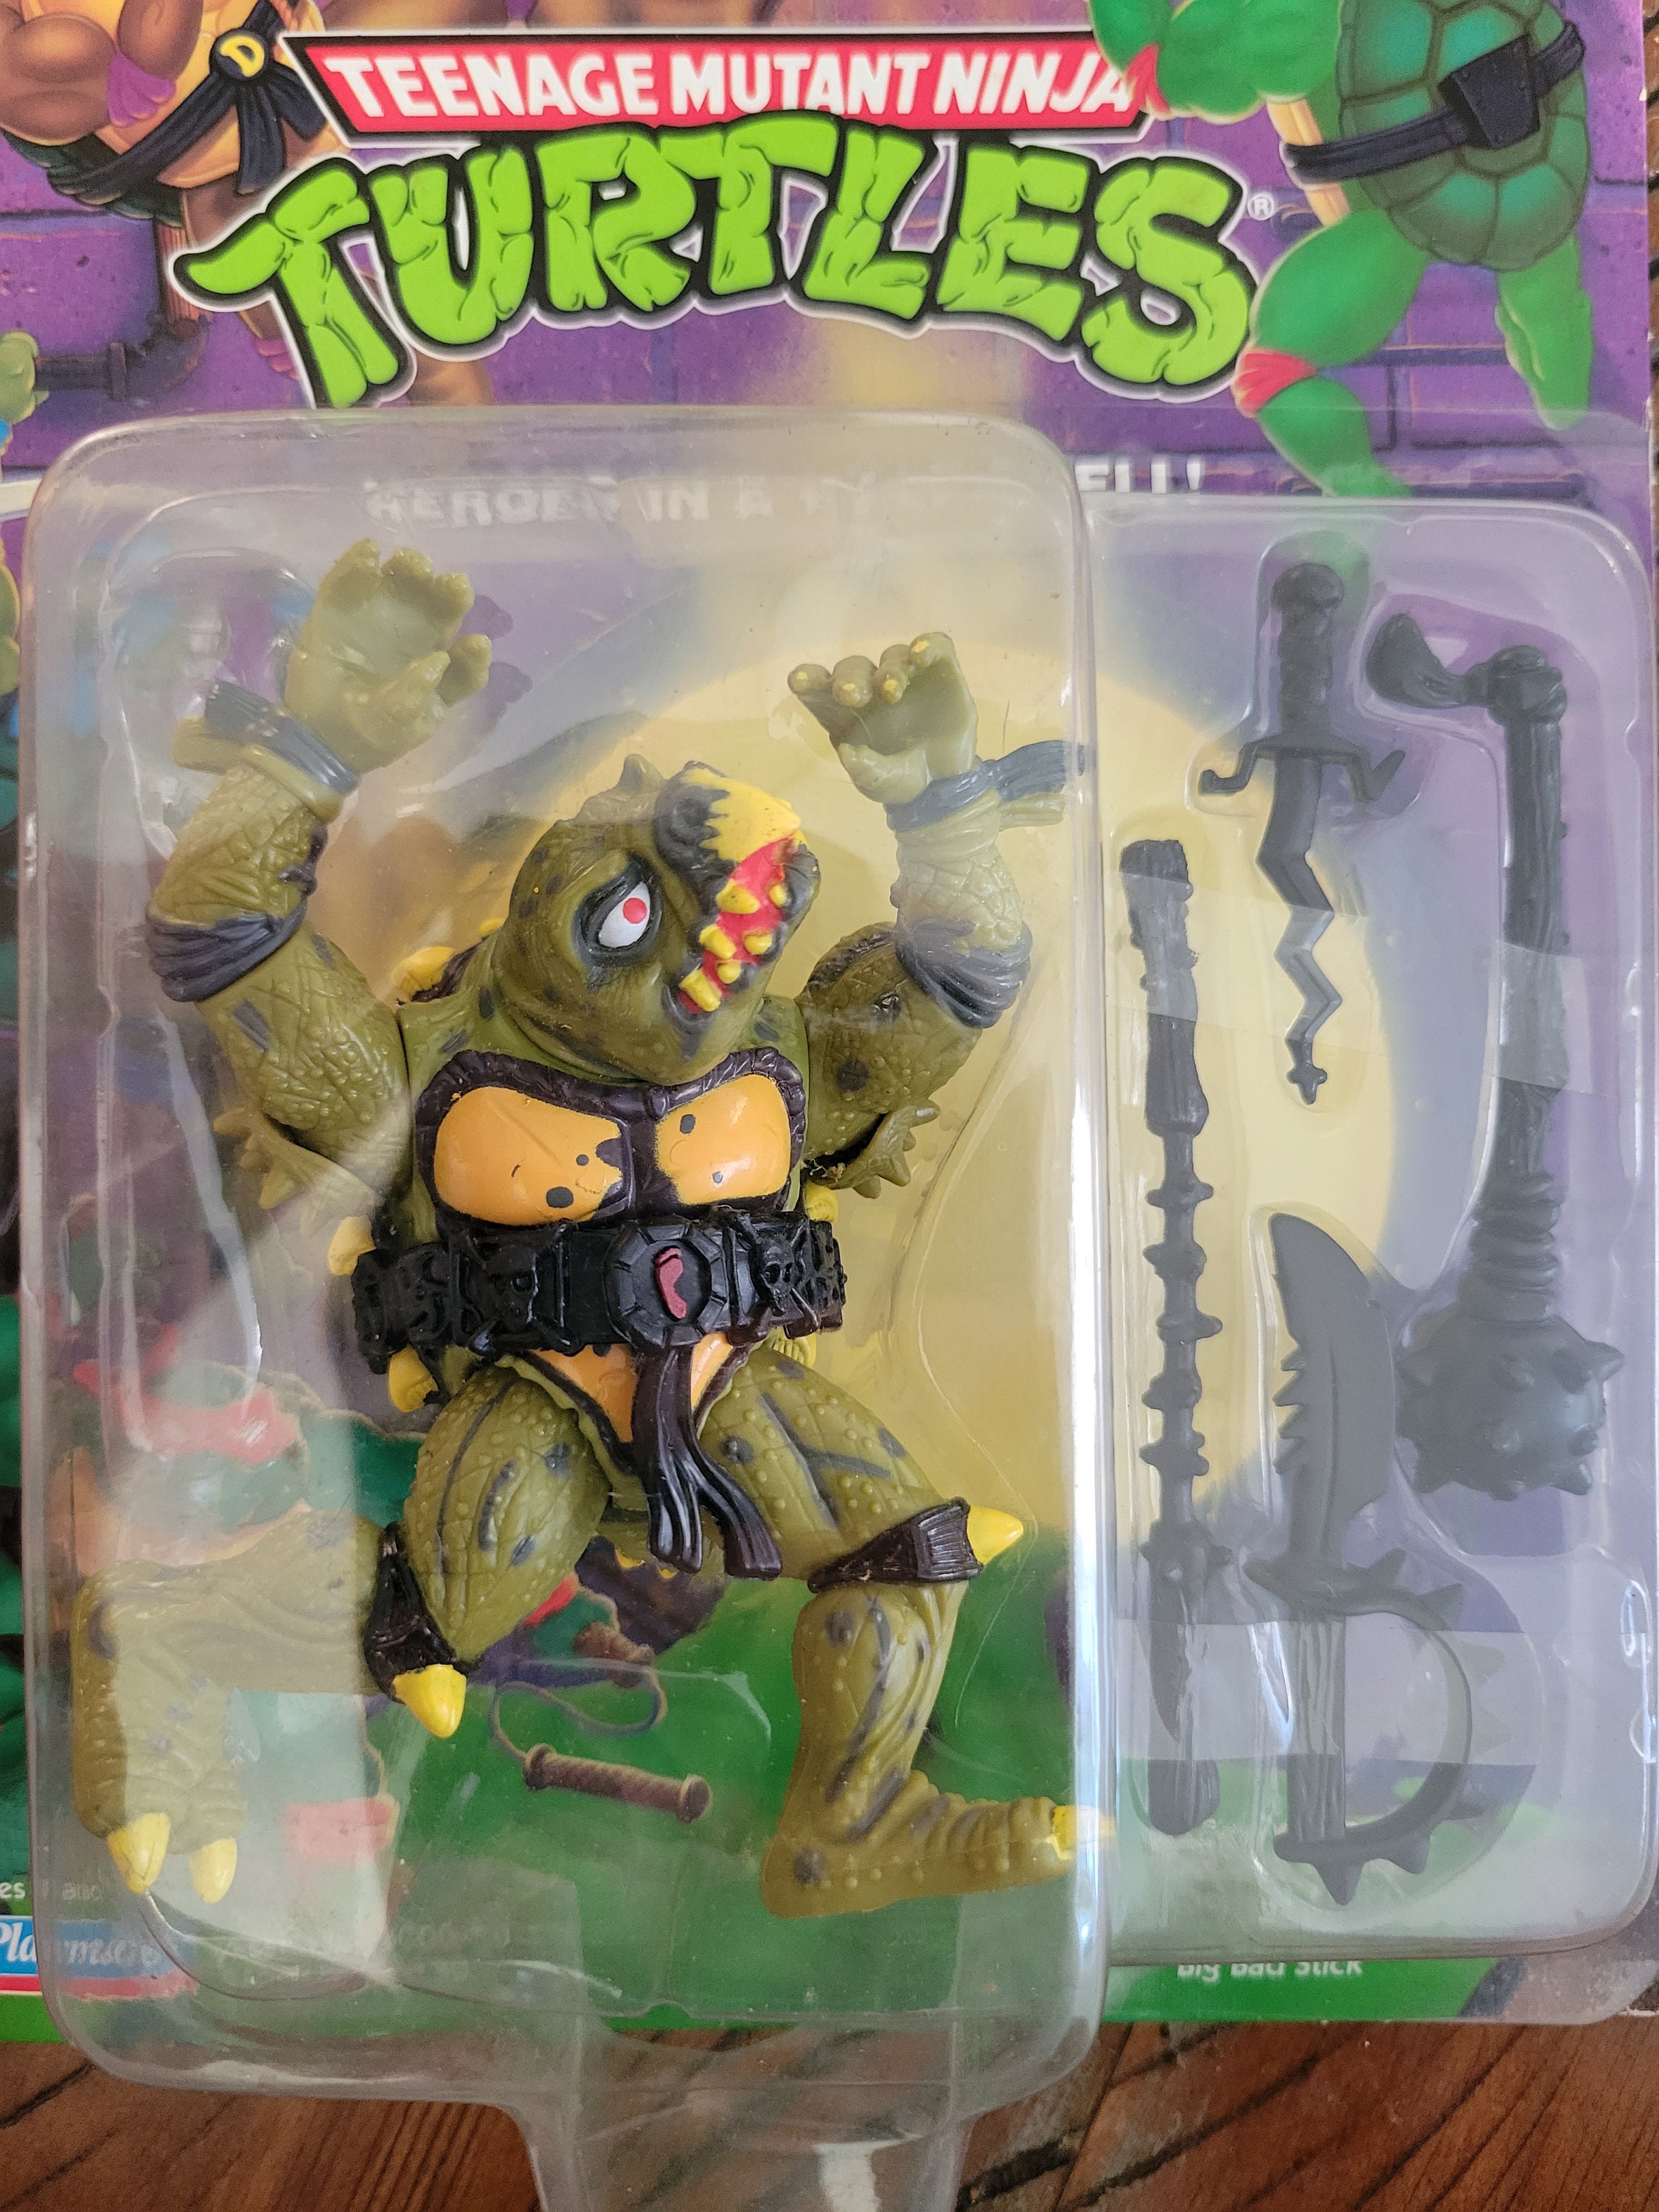 1998 TMNT Tokka Purple Card Reissue hard to find Vintage Teenage Mutant Ninja Turtles Action Figure Unopened Original